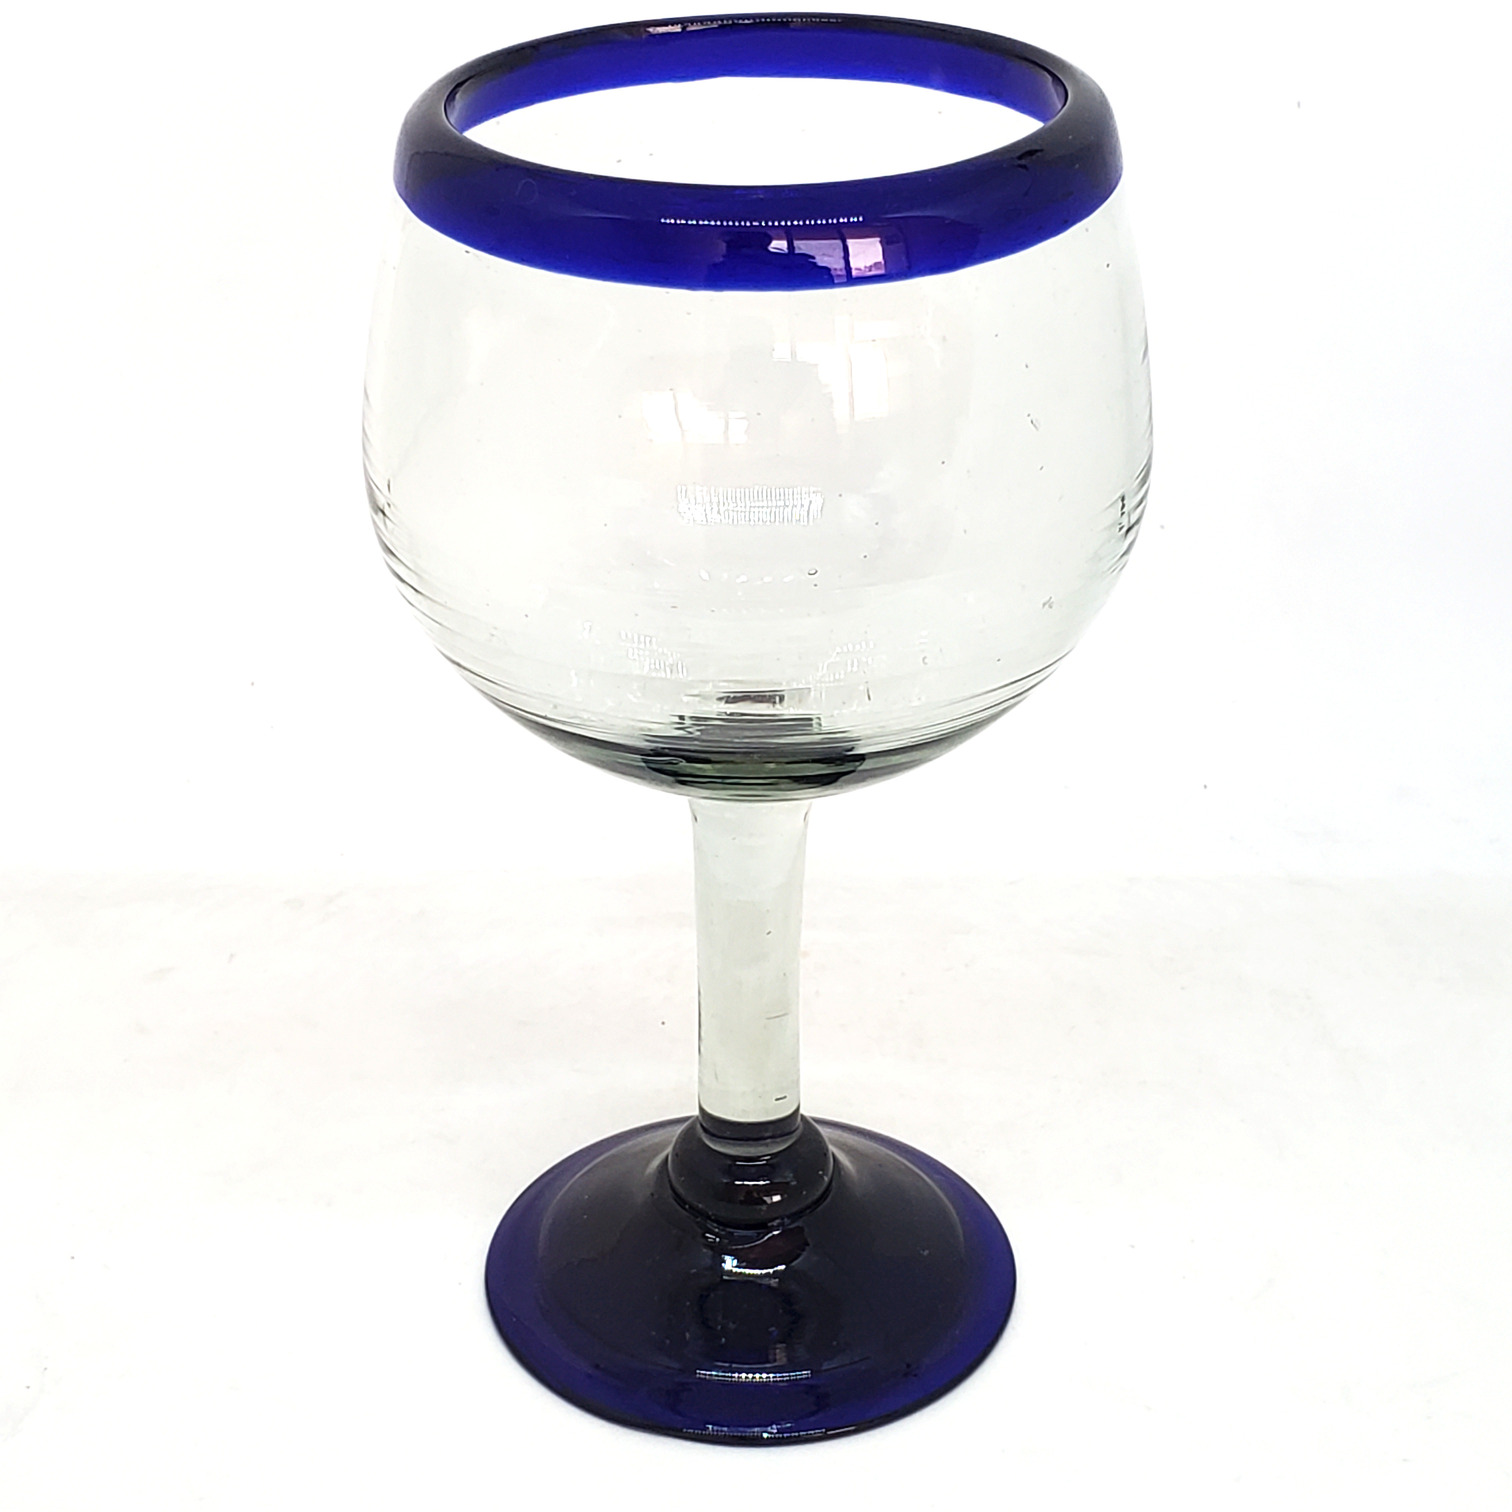 Borde de Color al Mayoreo / copas tipo globo con borde azul cobalto / Éstas copas de vino tipo globo son las más grandes en su tipo, las disfrutará al capturar el aroma de un buen vino tinto.